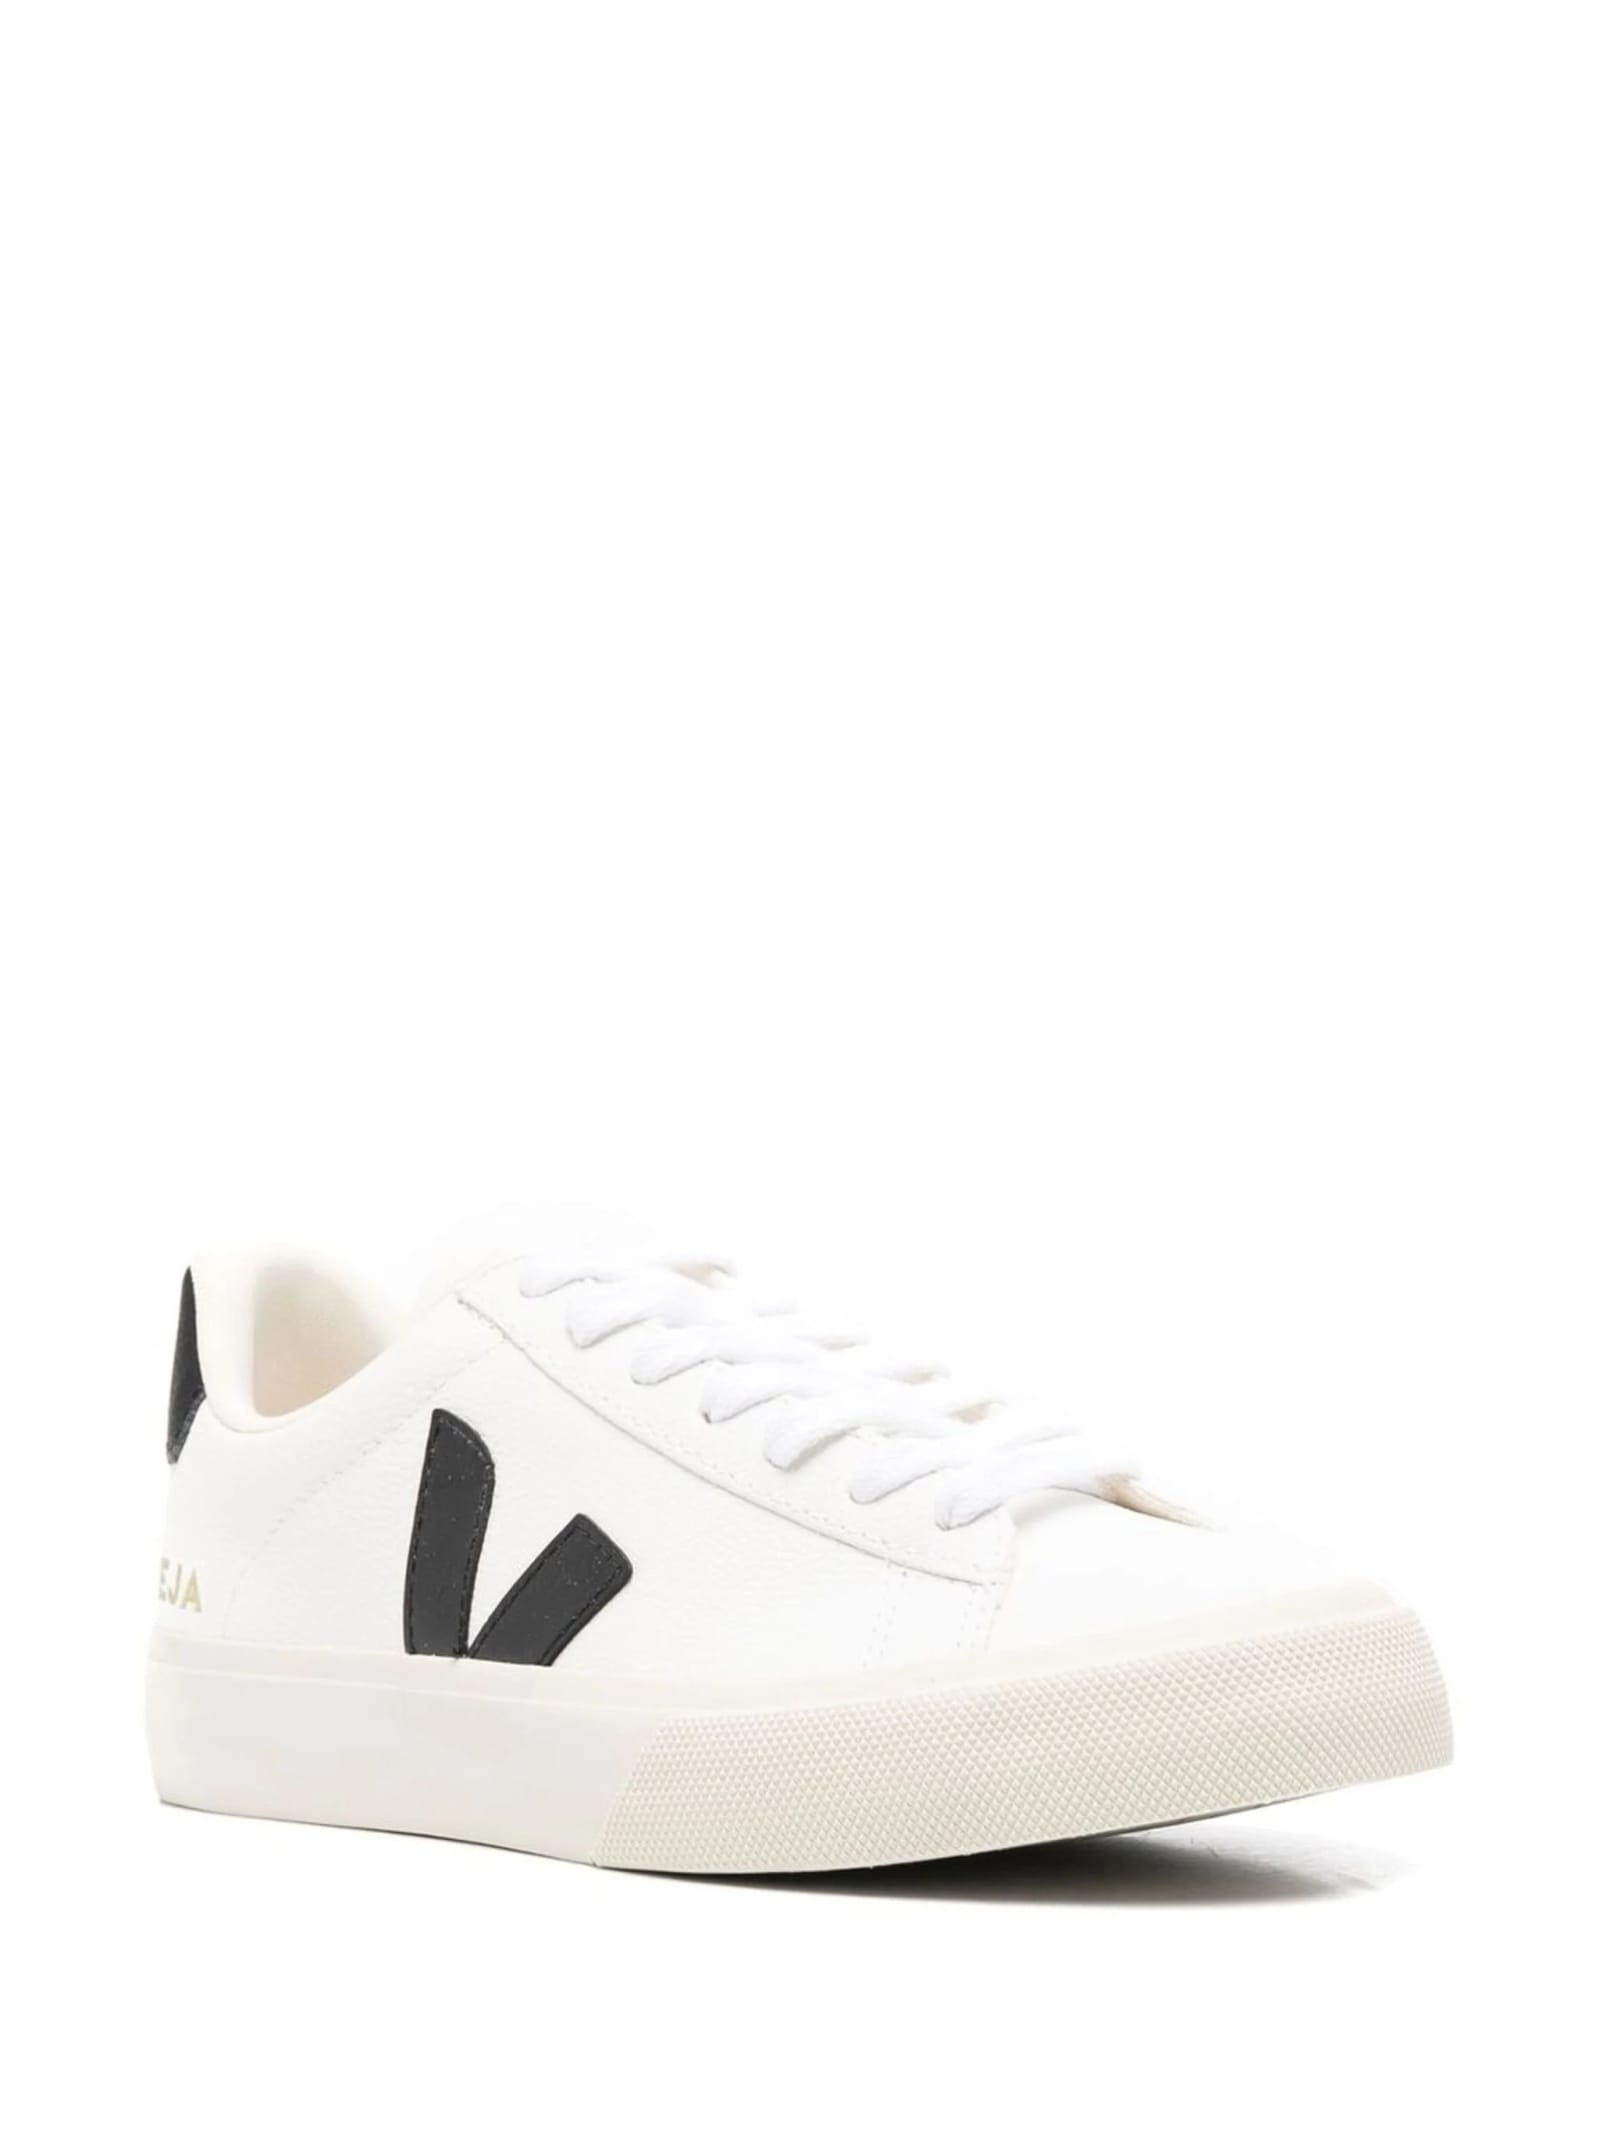 Shop Veja Campo Chromefree Sneakers In White/black